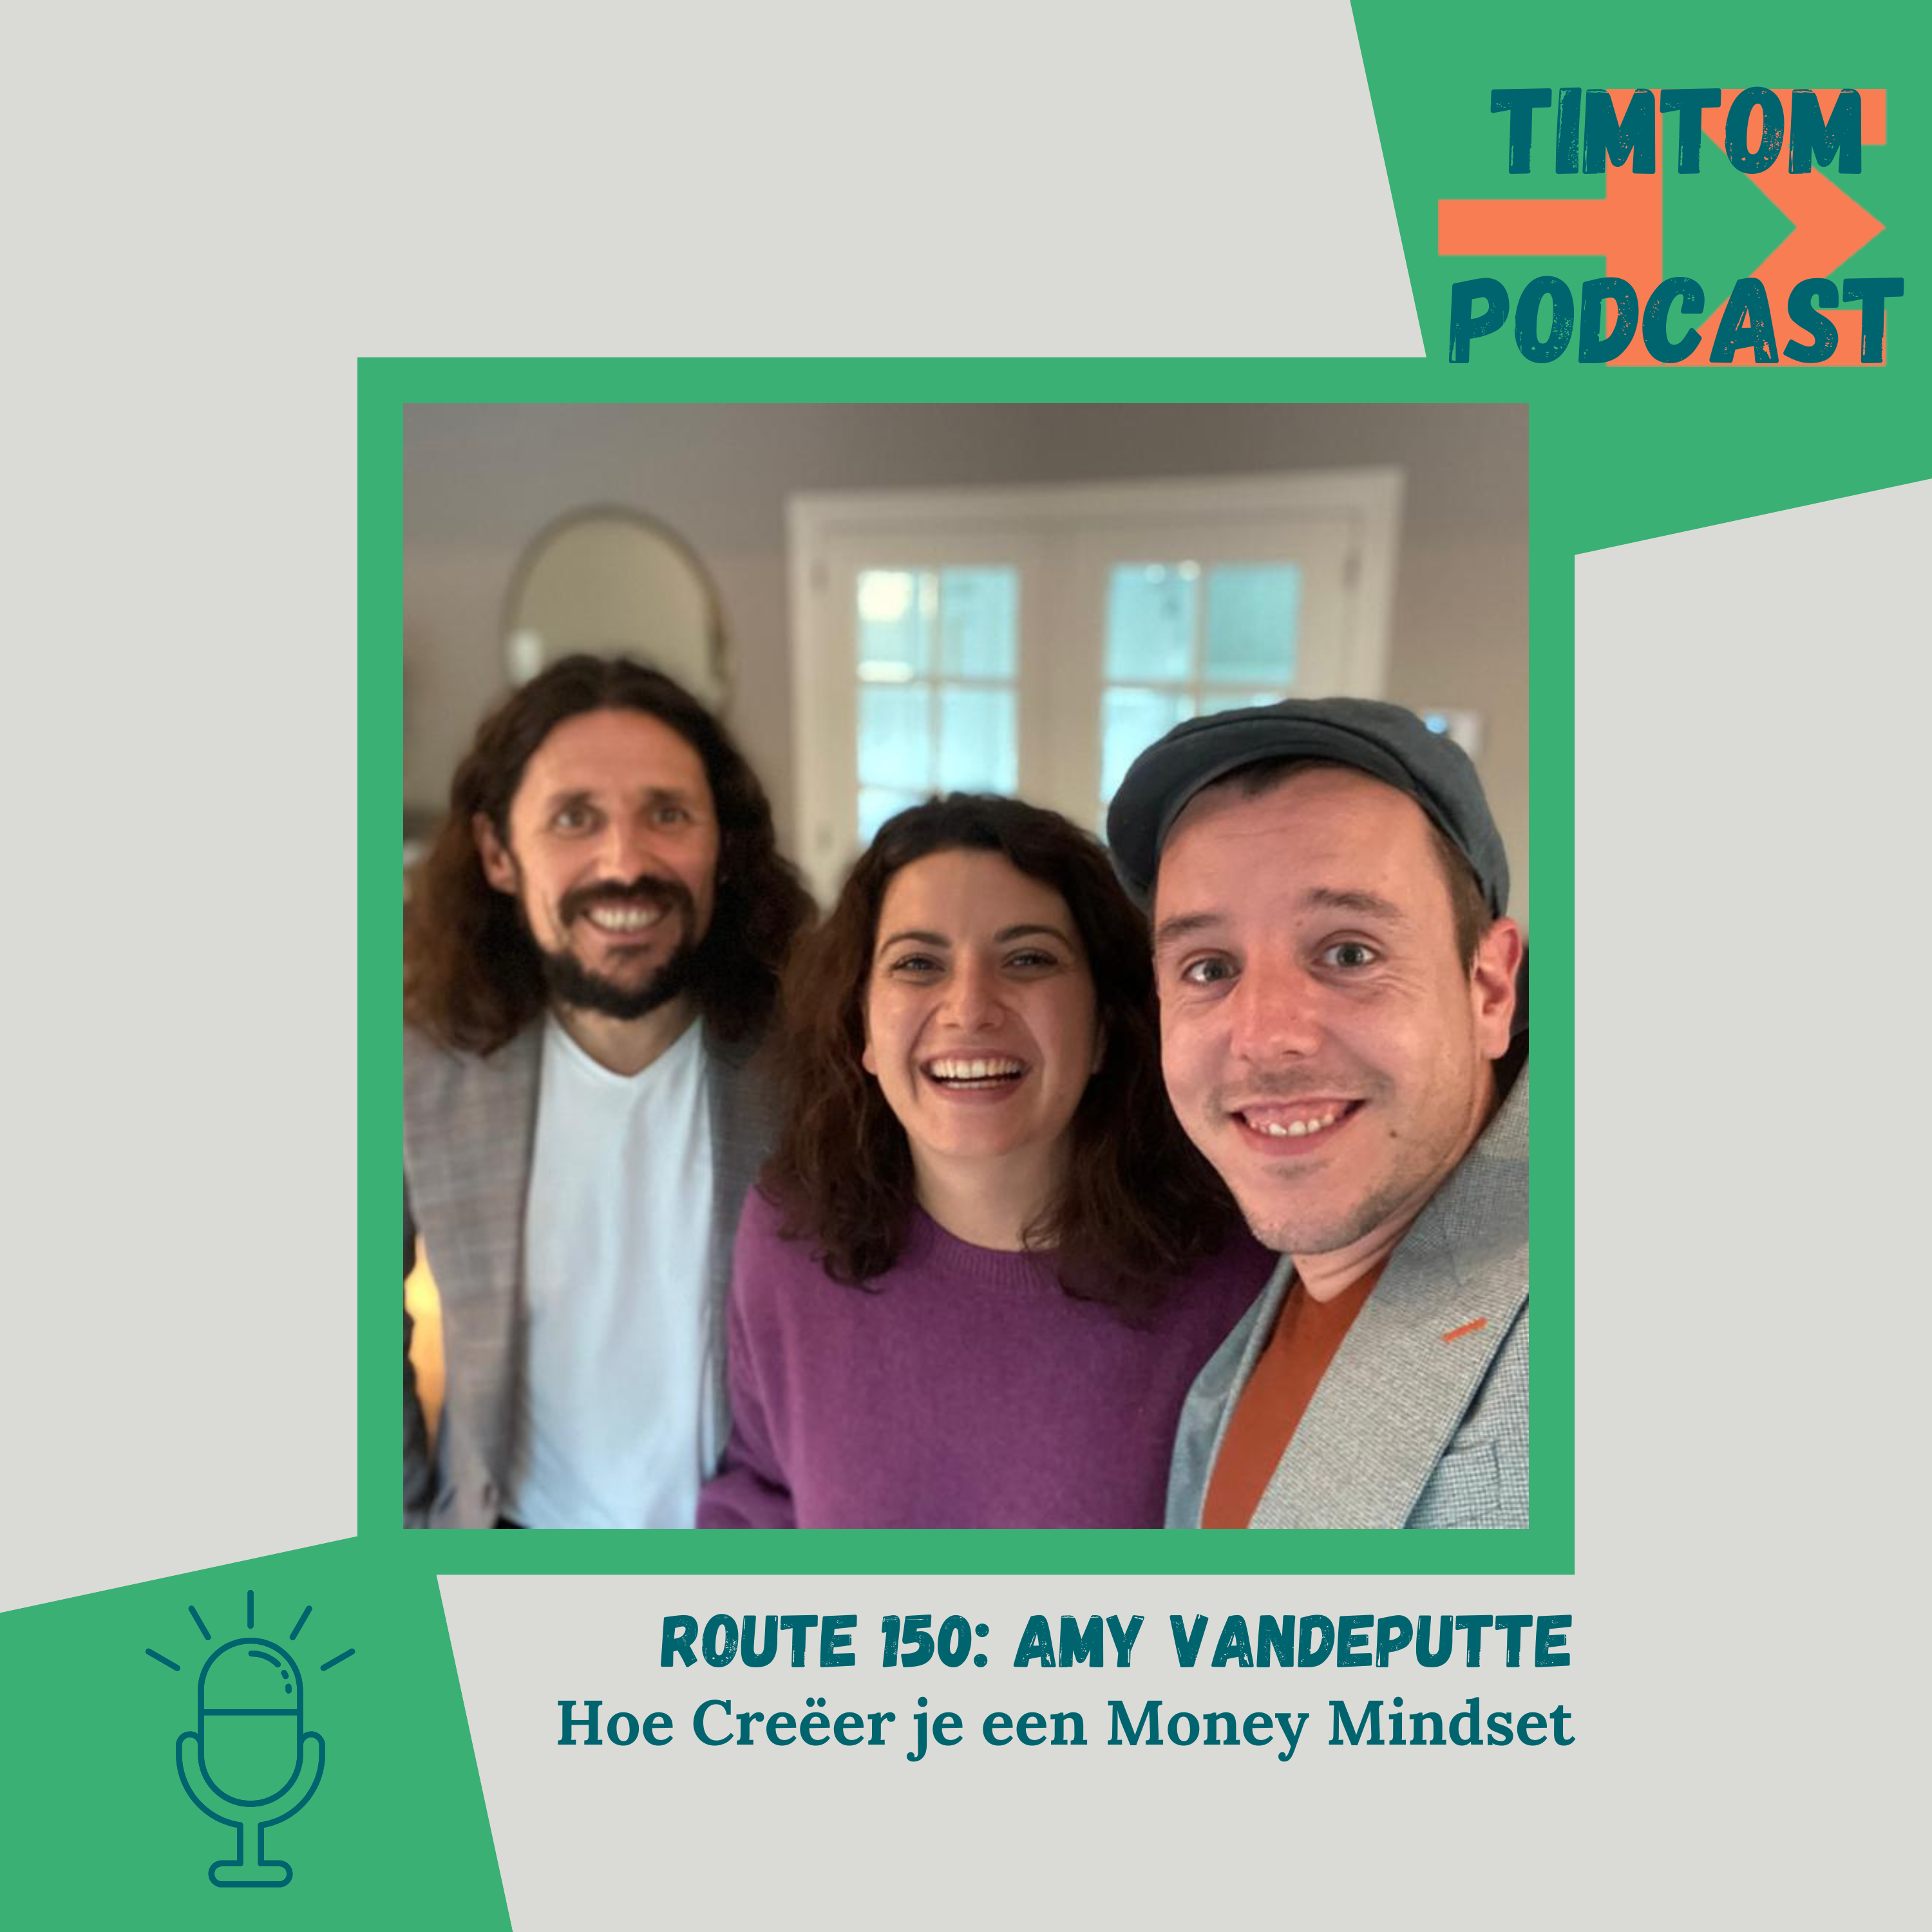 Hoe Creëer je een Money Mindset – Route 150 met Amy Vandeputte